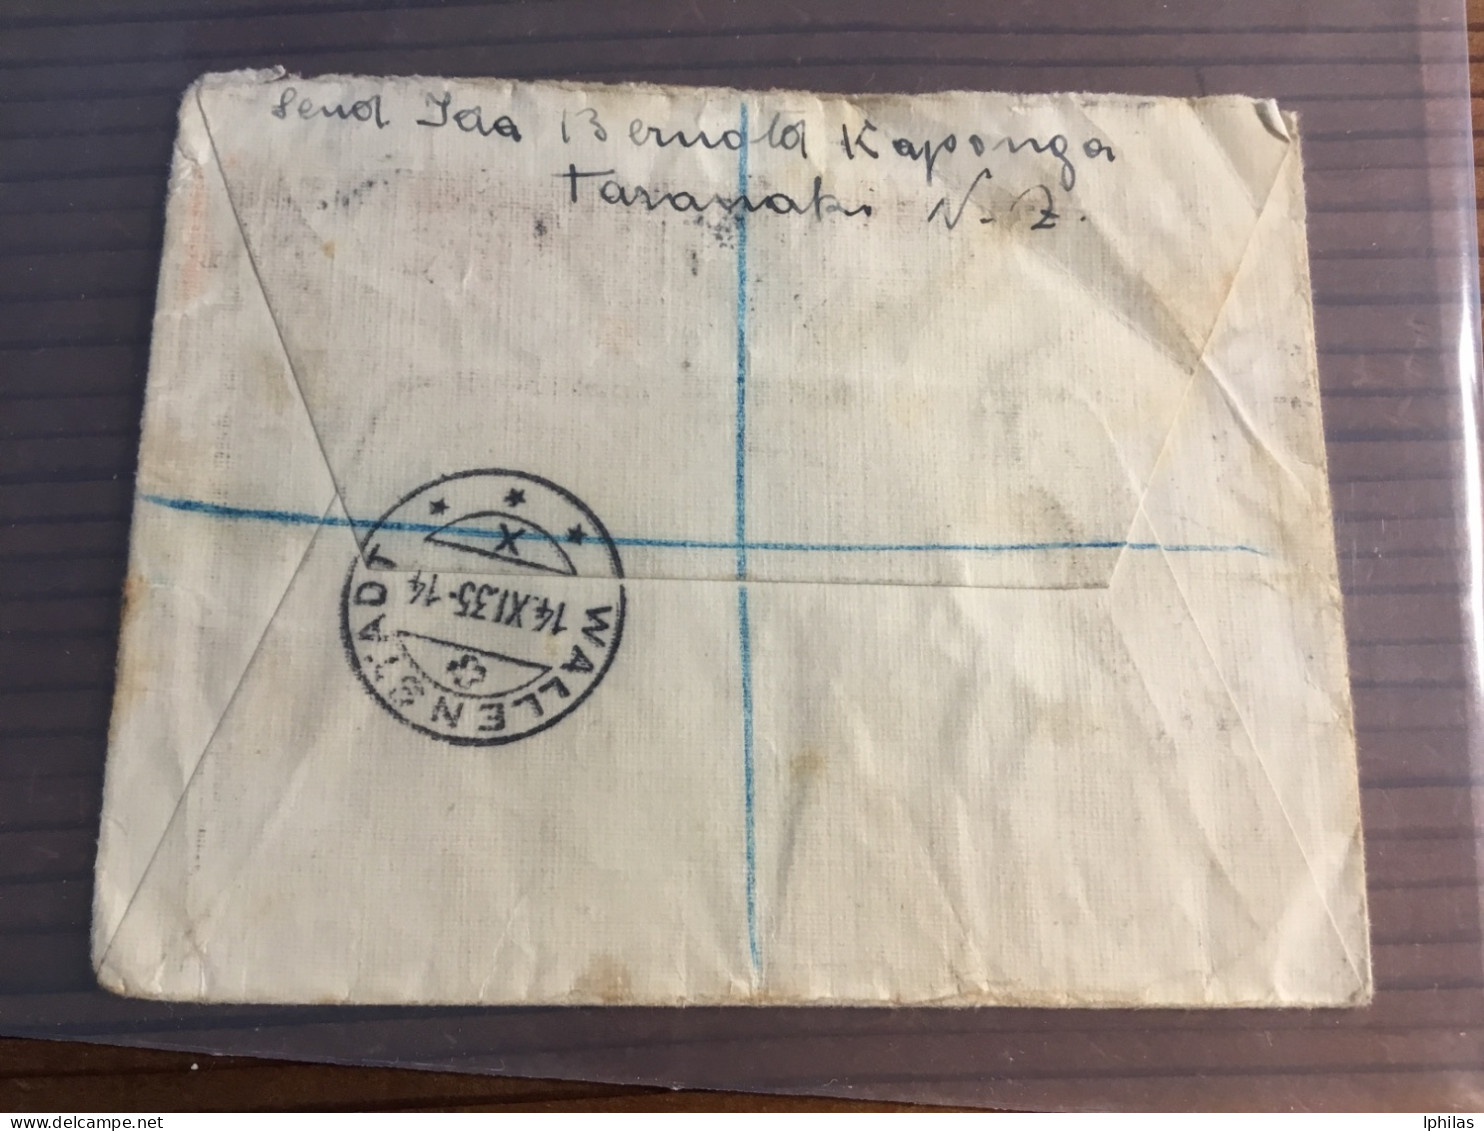 New Zealand KAPONGA R- Brief In Die Schweiz 1935 - Lettres & Documents